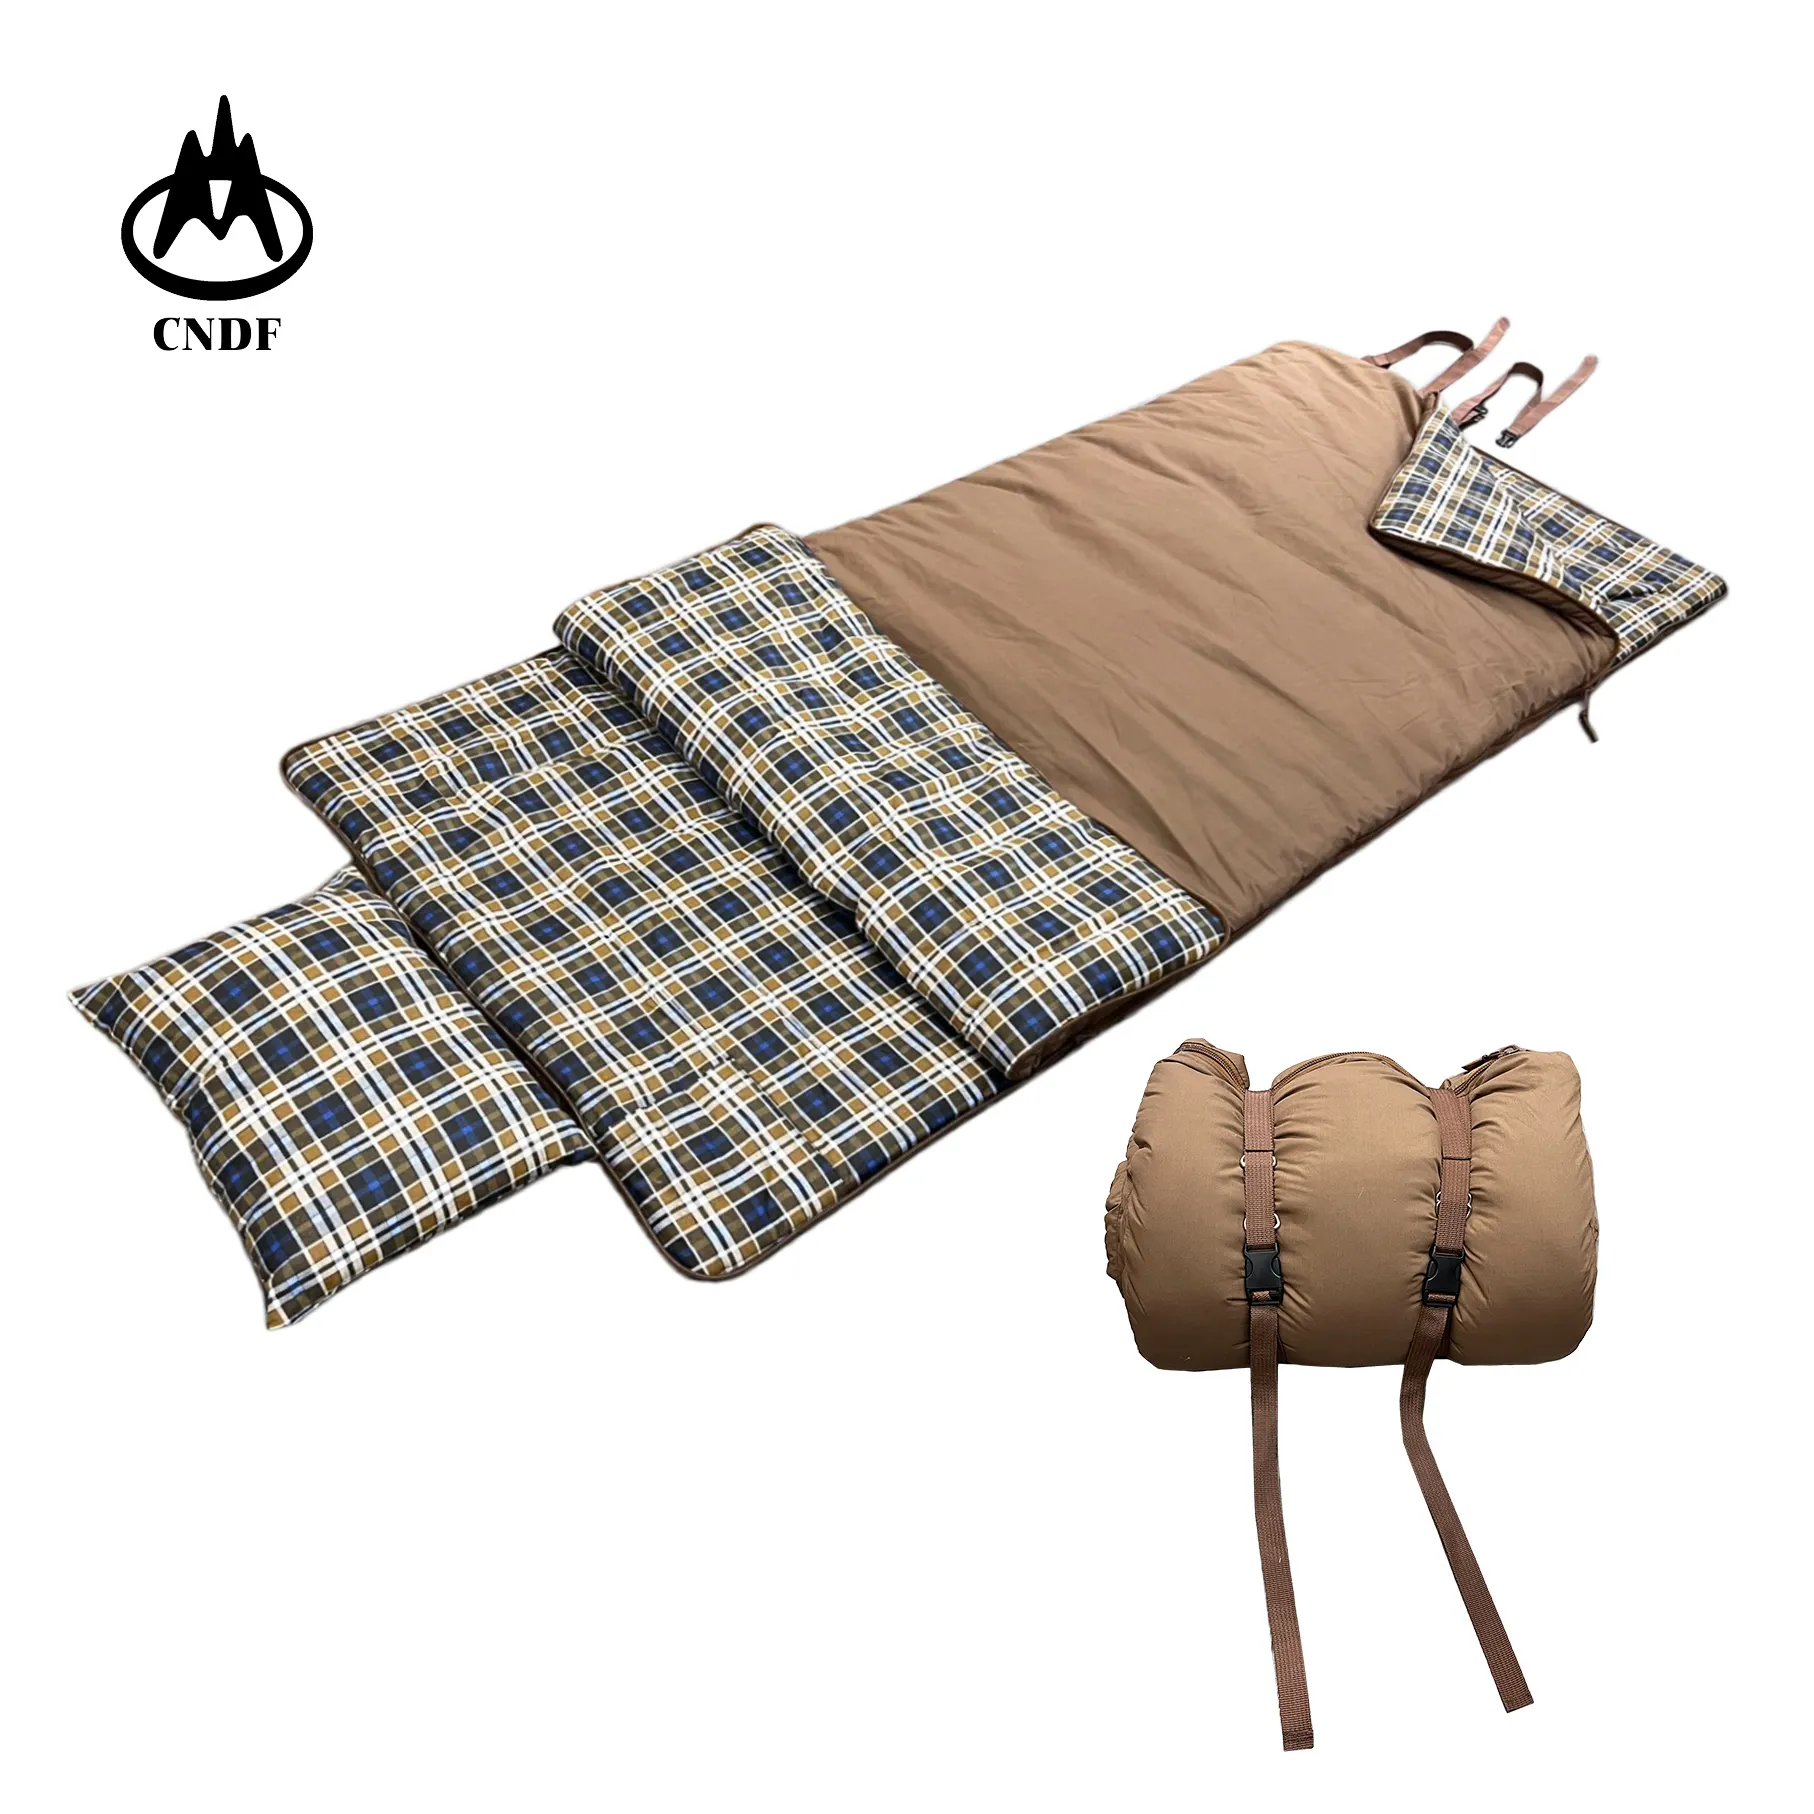 Büyük boy 3kg 4 sezon pamuklu pazen uyku tulumu yastık ile sıcak soğuk hava açık kış kamp uyku tulumu